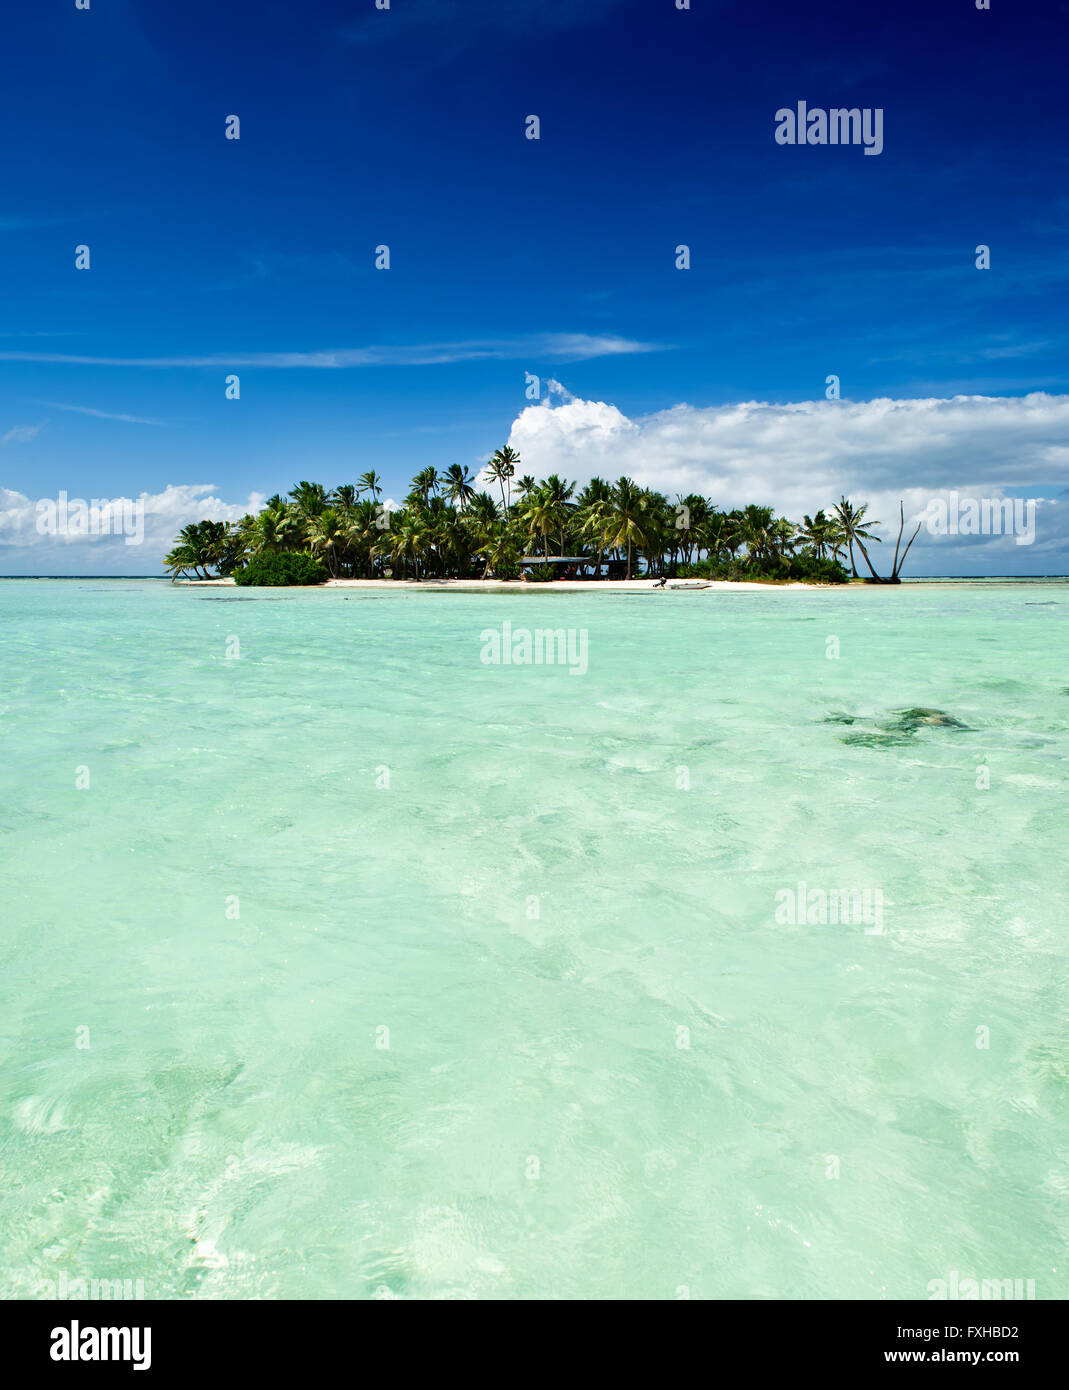 Inhabitée tropical ou île déserte avec plage et palmiers dans le lagon bleu à l'intérieur de l'atoll de Rangiroa près de Tahiti, Polynésie Française Banque D'Images